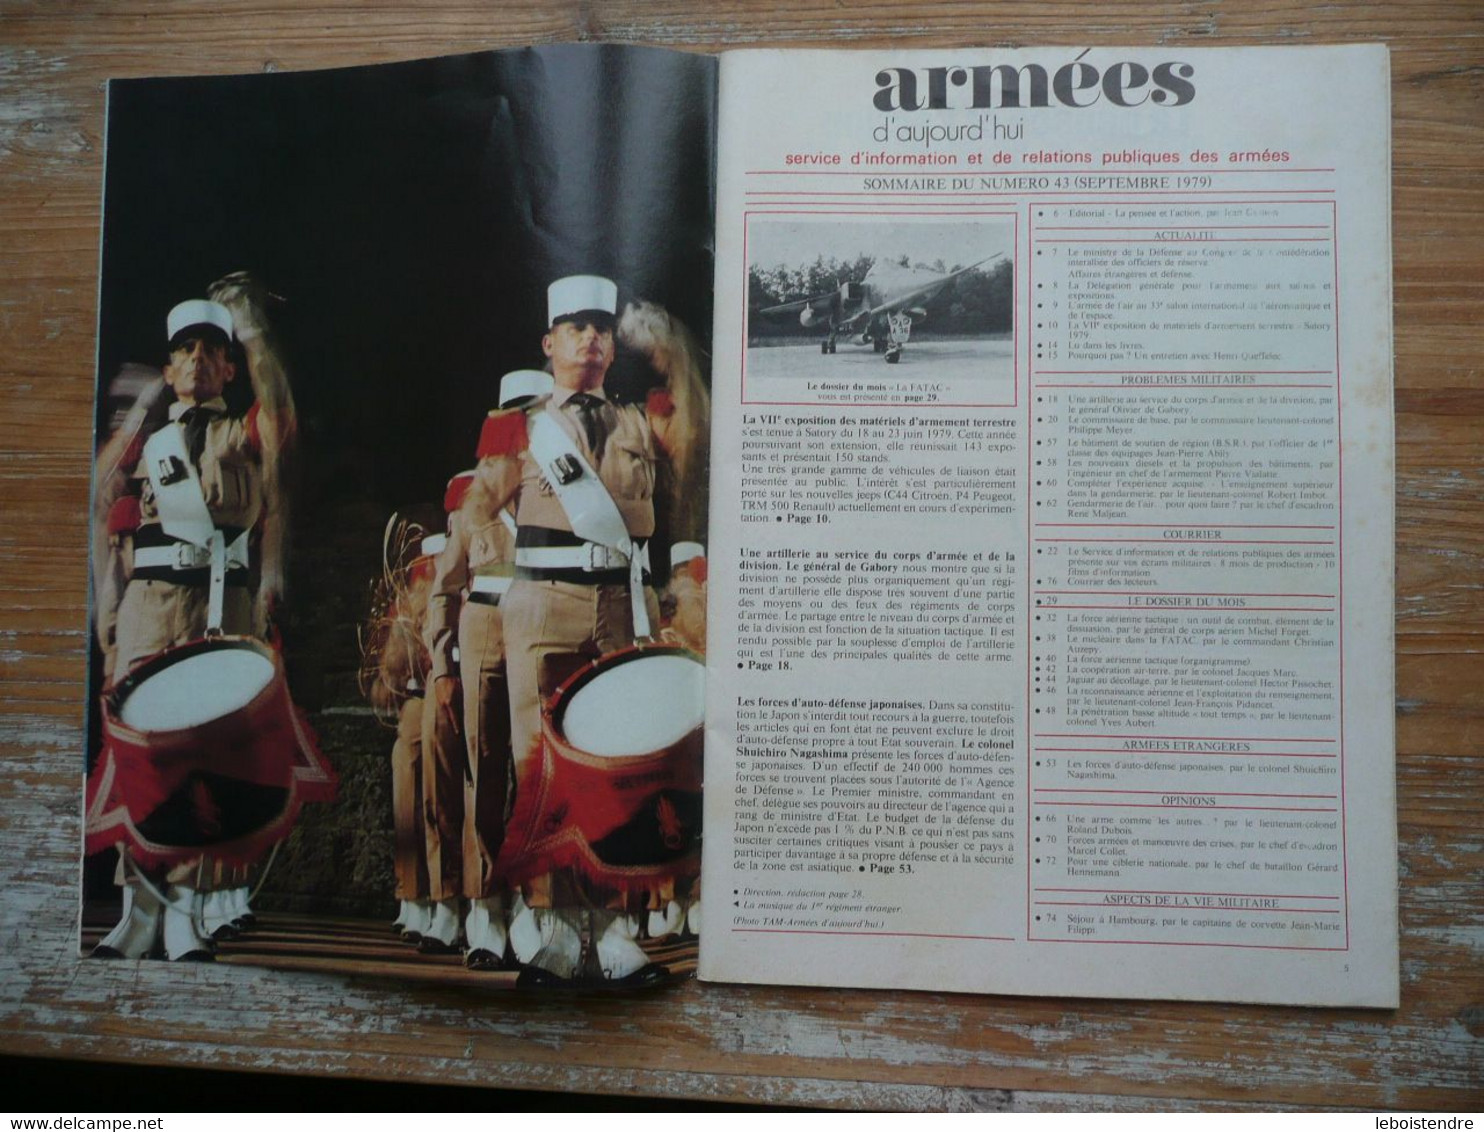 ARMEES D AUJOURD'HUI N° 43 SEPTEMBRE 1979 MENSUEL SATORY 1979 FORCES D AUTO-DEFENSE JAPONAISES FORCE AERIENNE TACTIQUE - Français